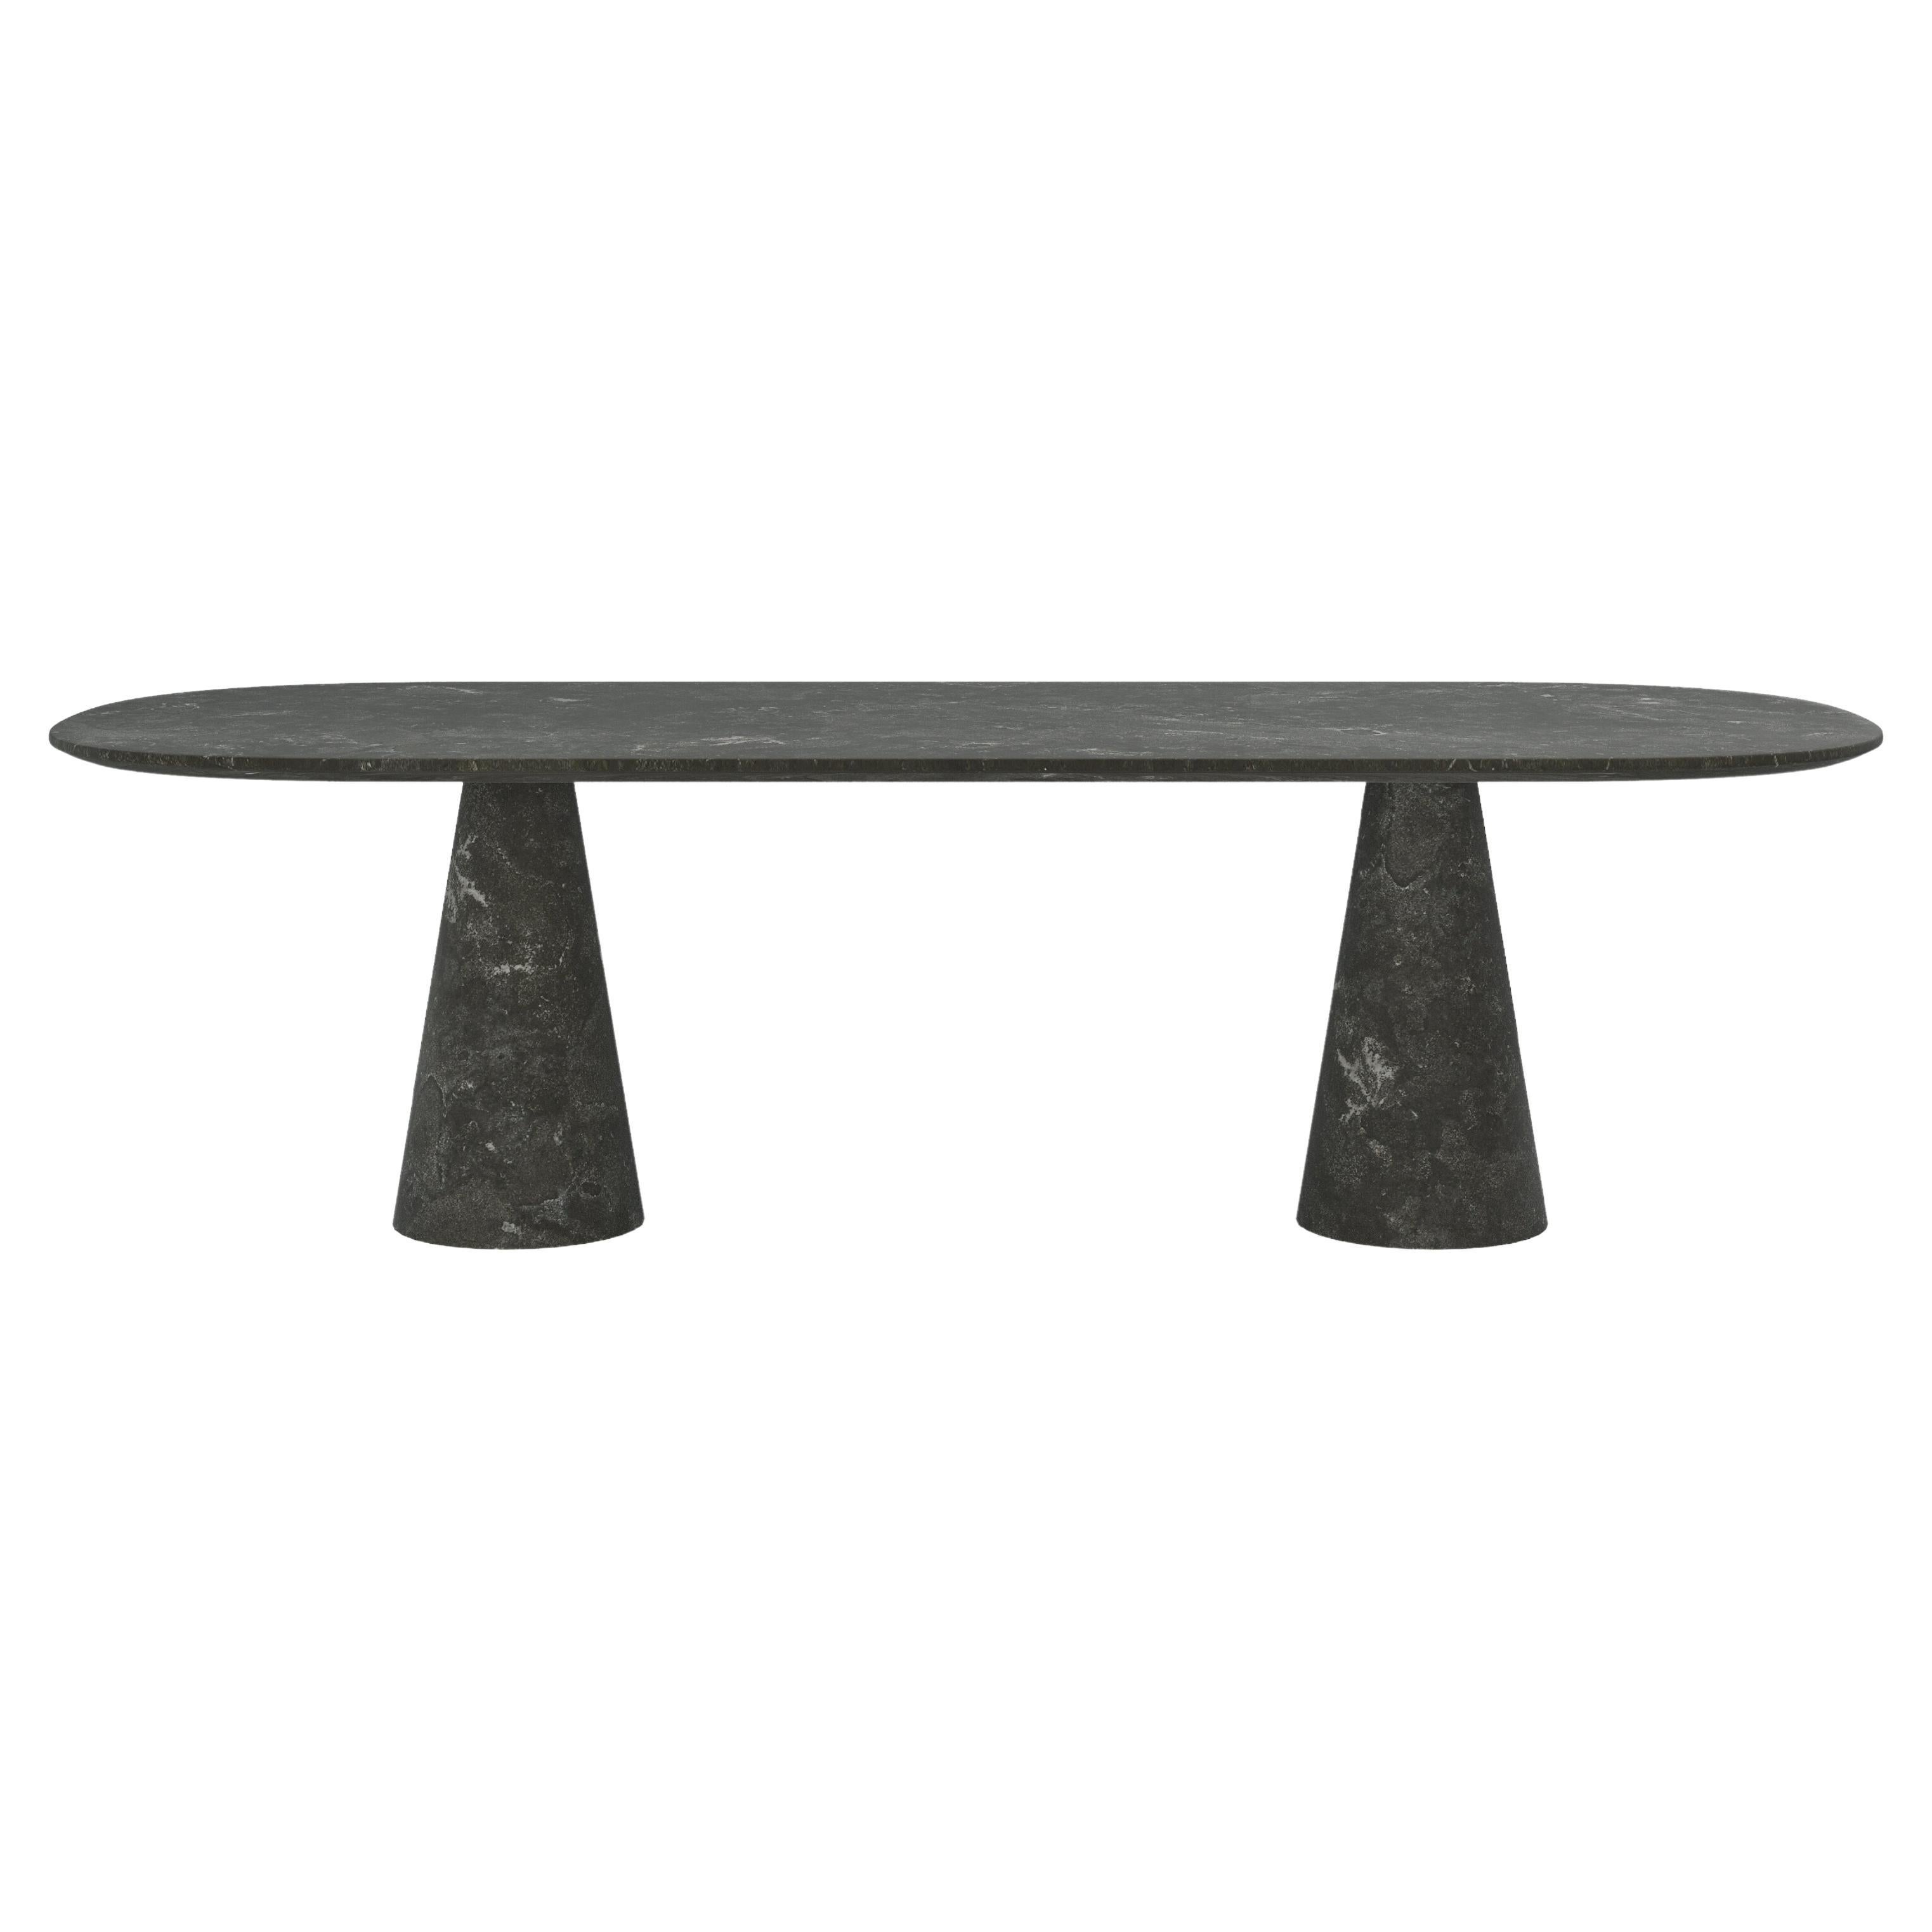 FORM(LA) Cono Oval Dining Table 84”L x 42”W x 30”H Nero Petite Granite